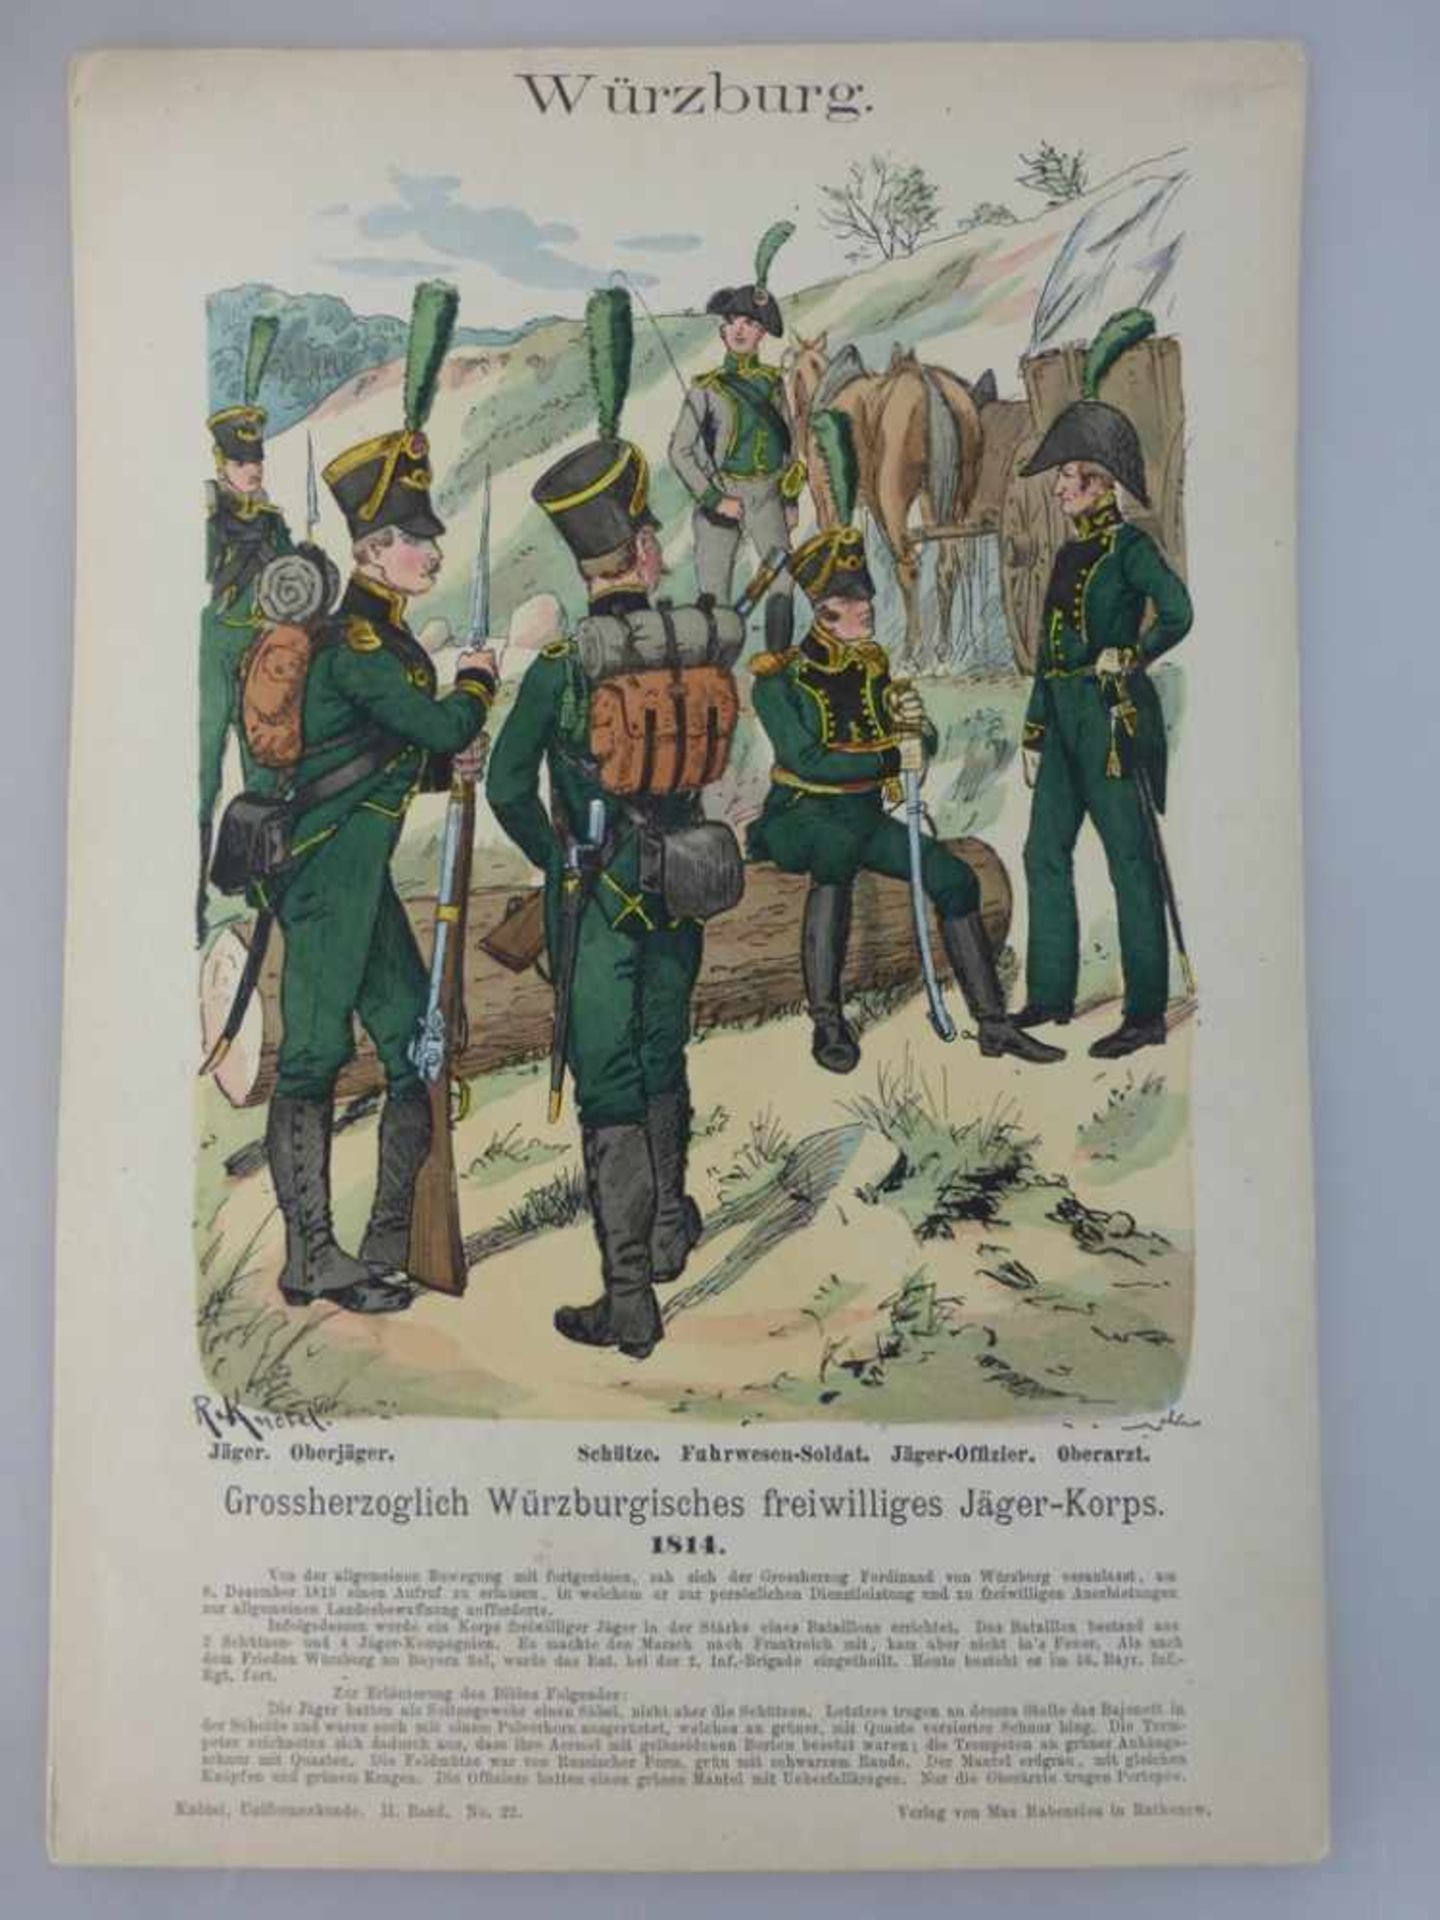 Farblithografie aus Knötel Uniformenkunde, Grossherzoglich Würzburgisches freiwilligesJäger-Korps,